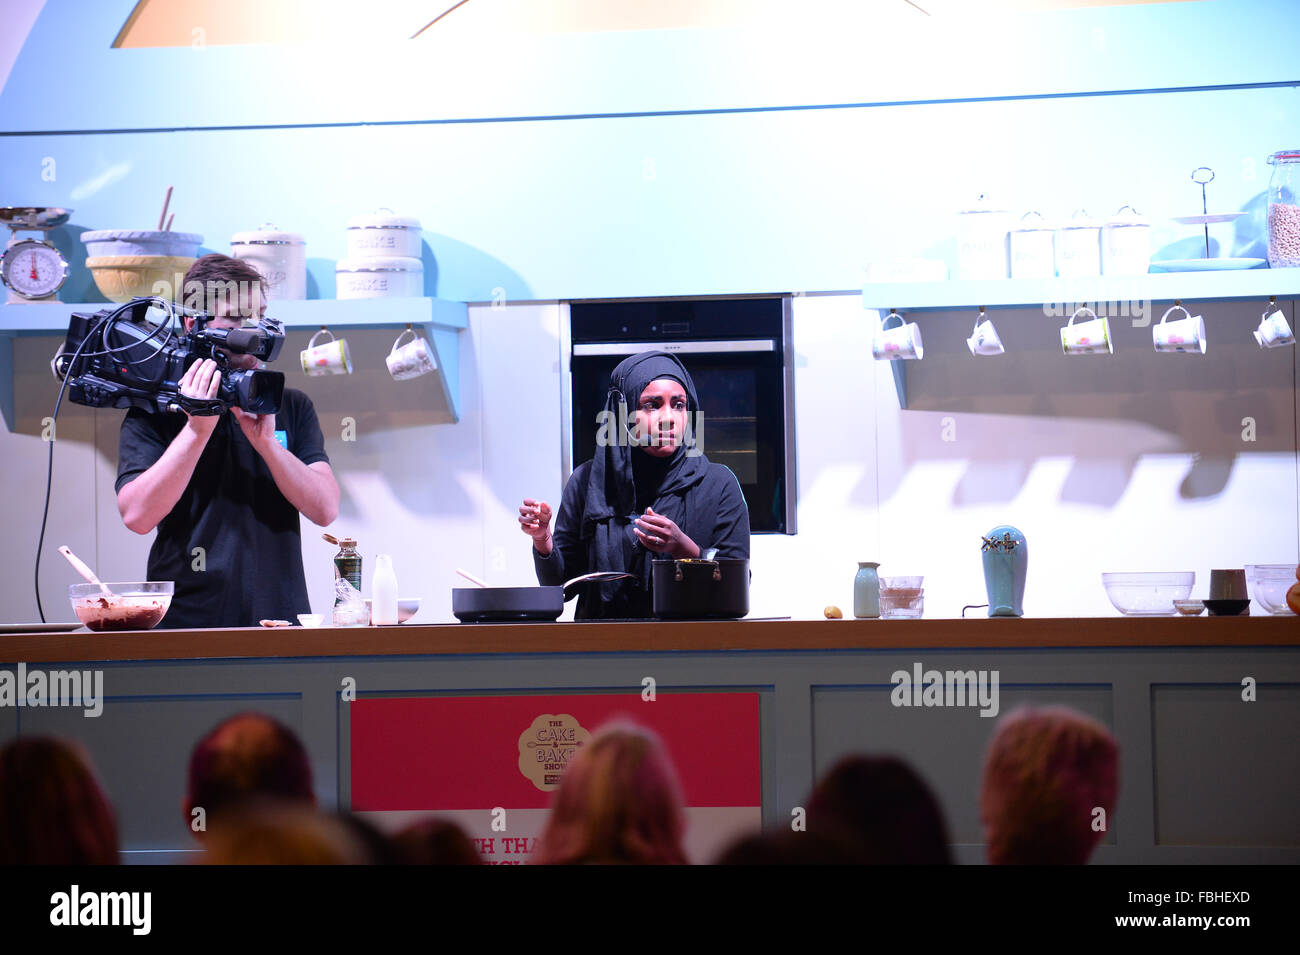 Nadiya Hussain, Gewinner des The Great British Bake Off 2015 nimmt Teil an einer Demonstration der Kochkunst am Kuchen und Backen zeigen. Stockfoto